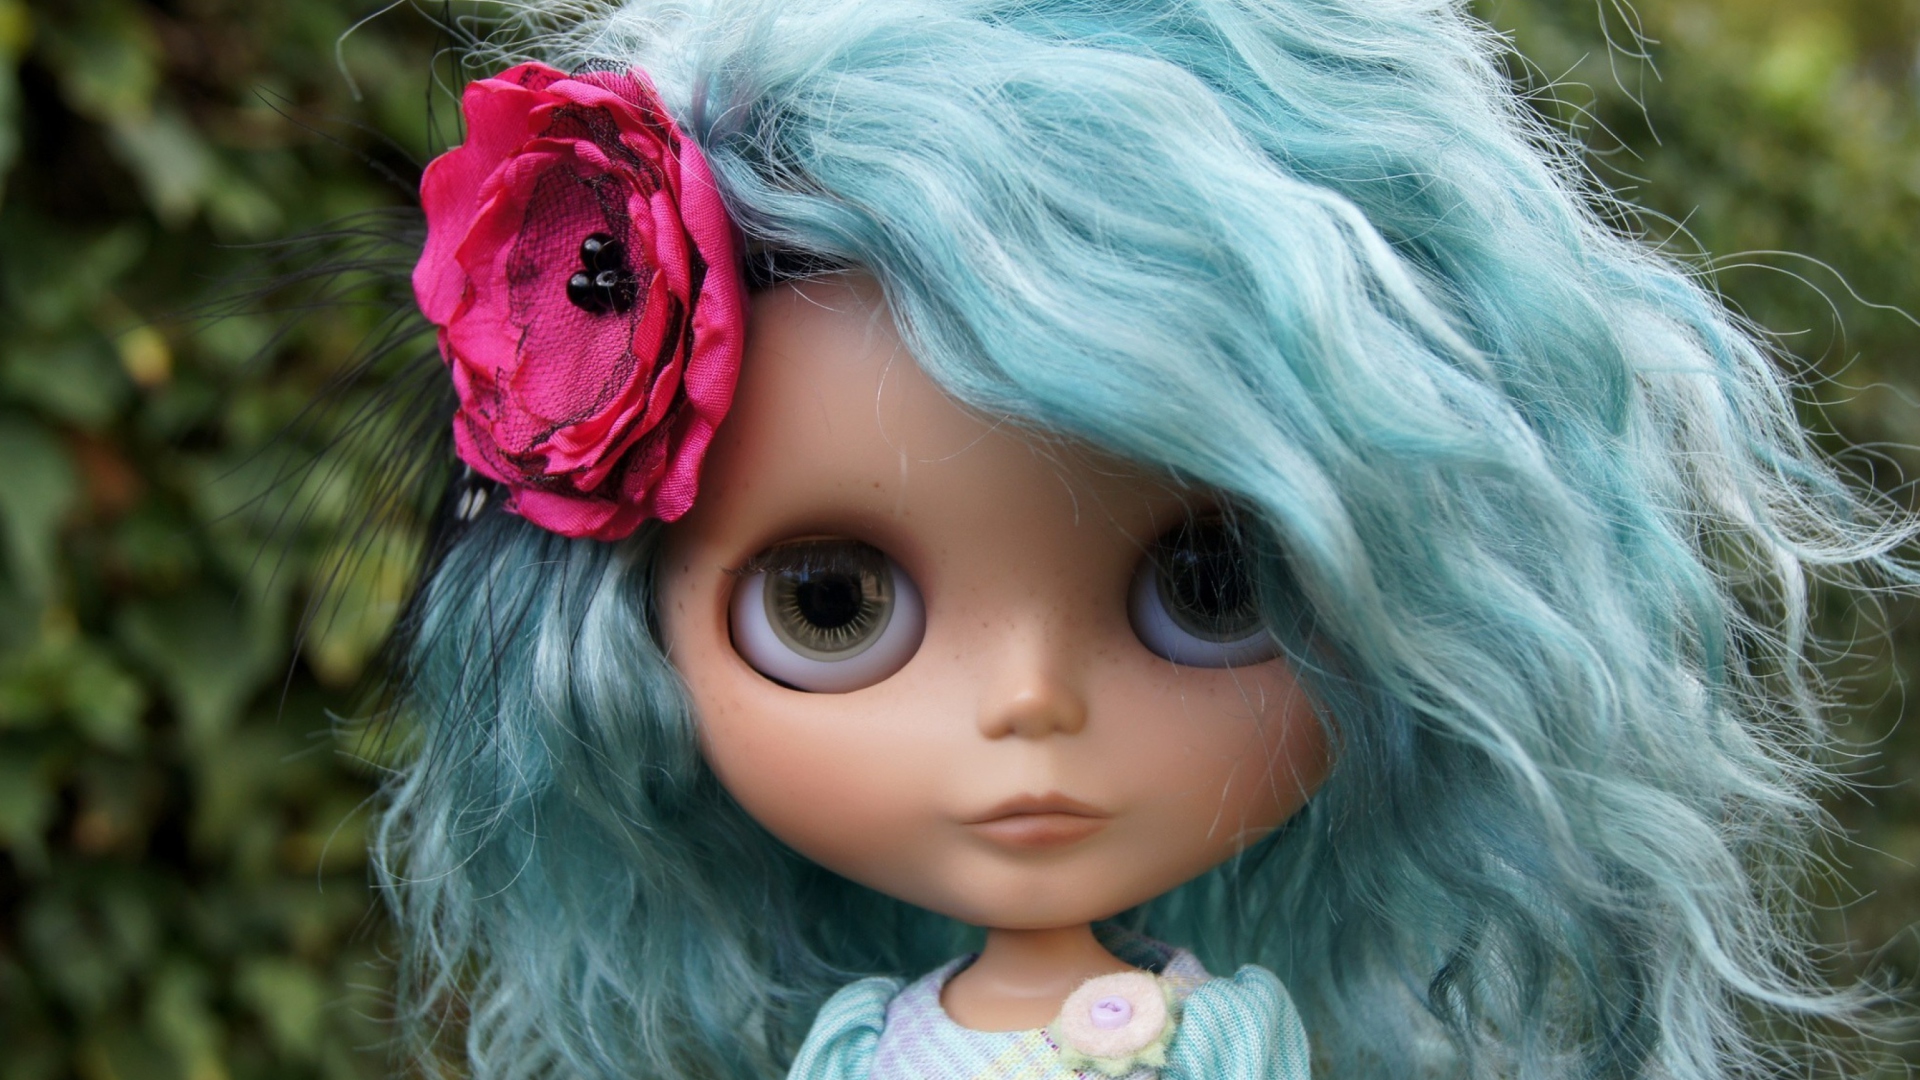 Обои Doll With Blue Hair 1920x1080